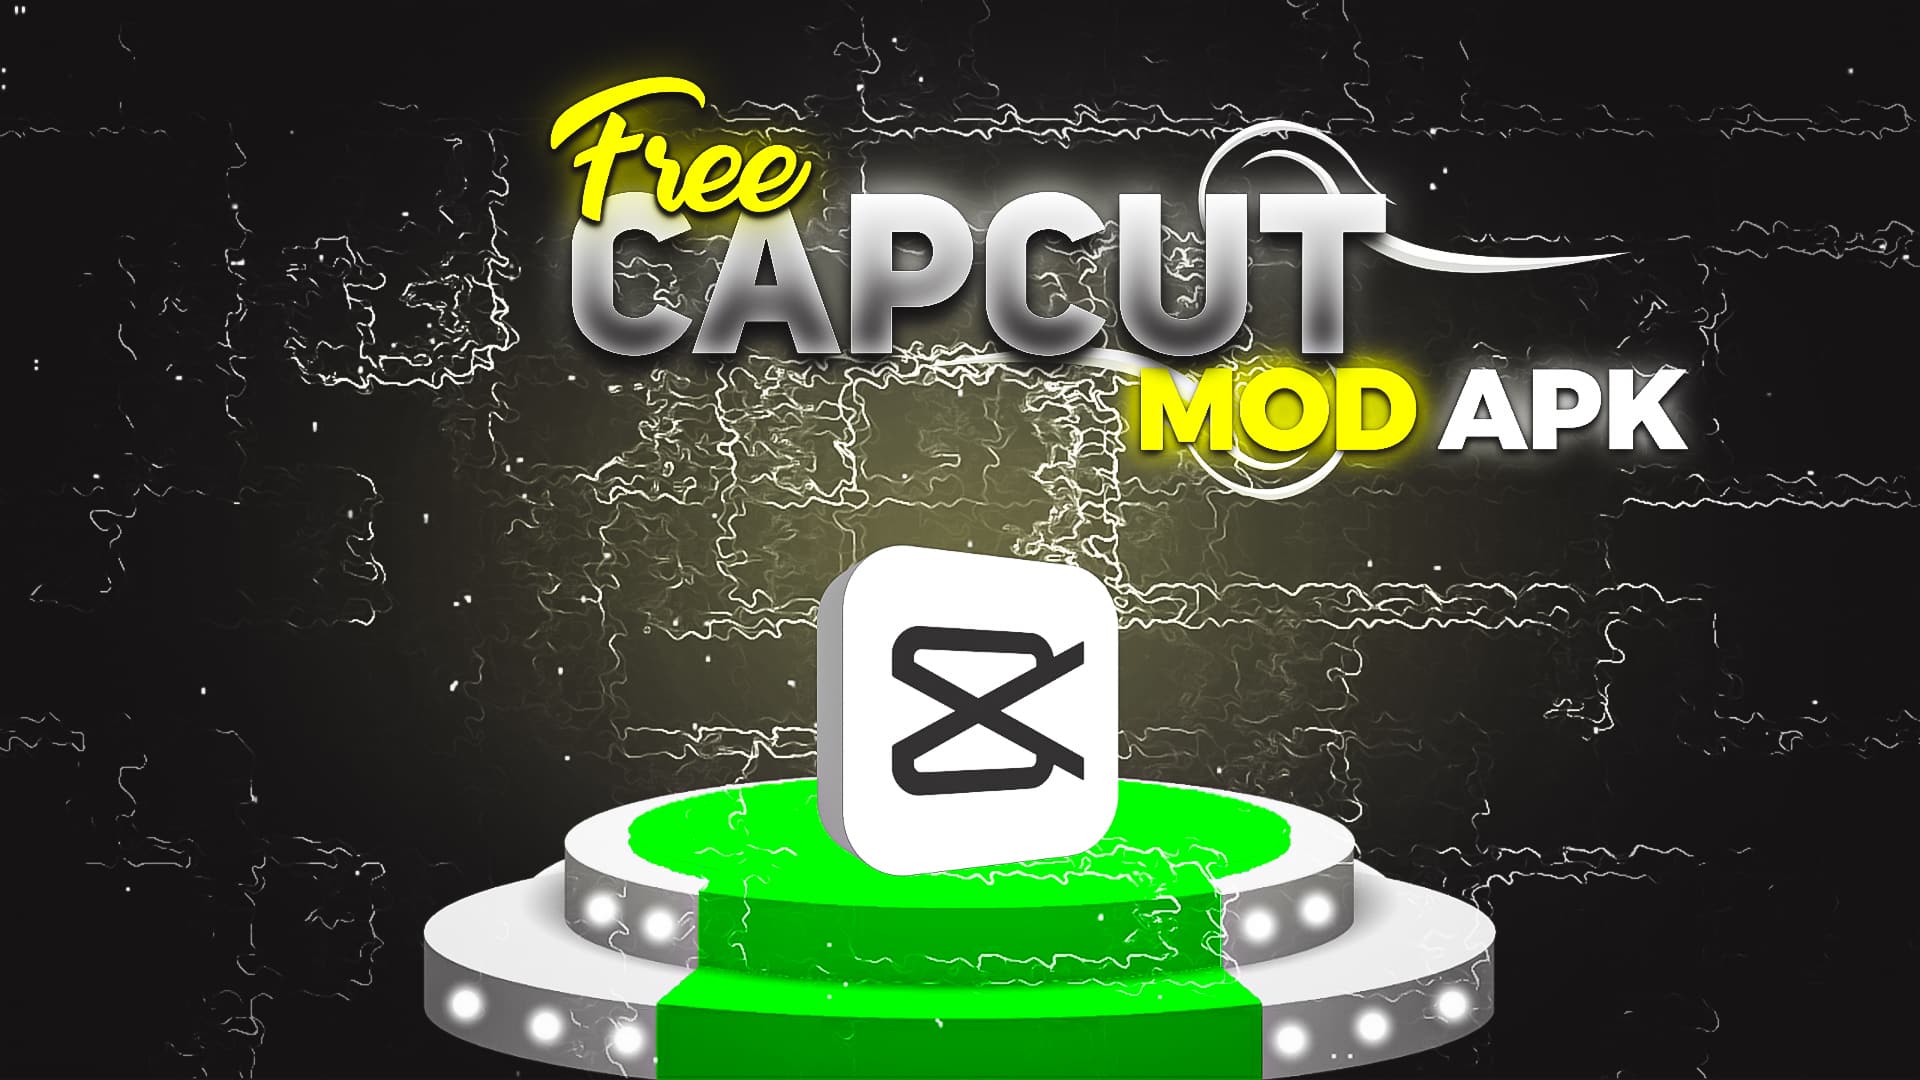 Capcut mod apk latest version